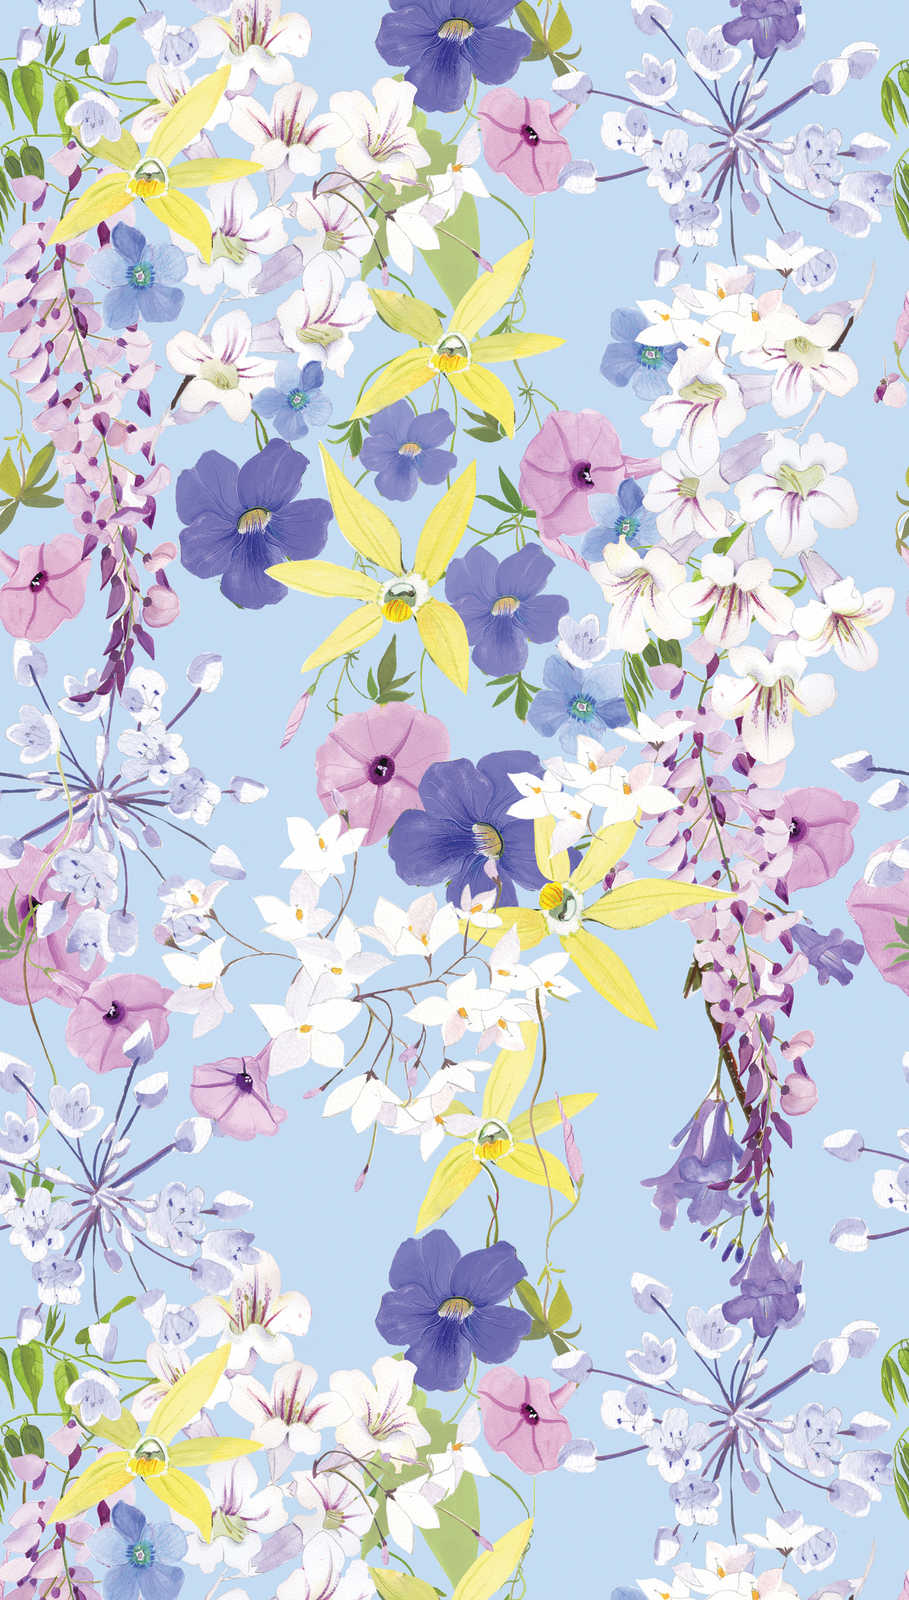             Papier peint à motifs floraux dans des tons froids - multicolore, lilas, jaune
        